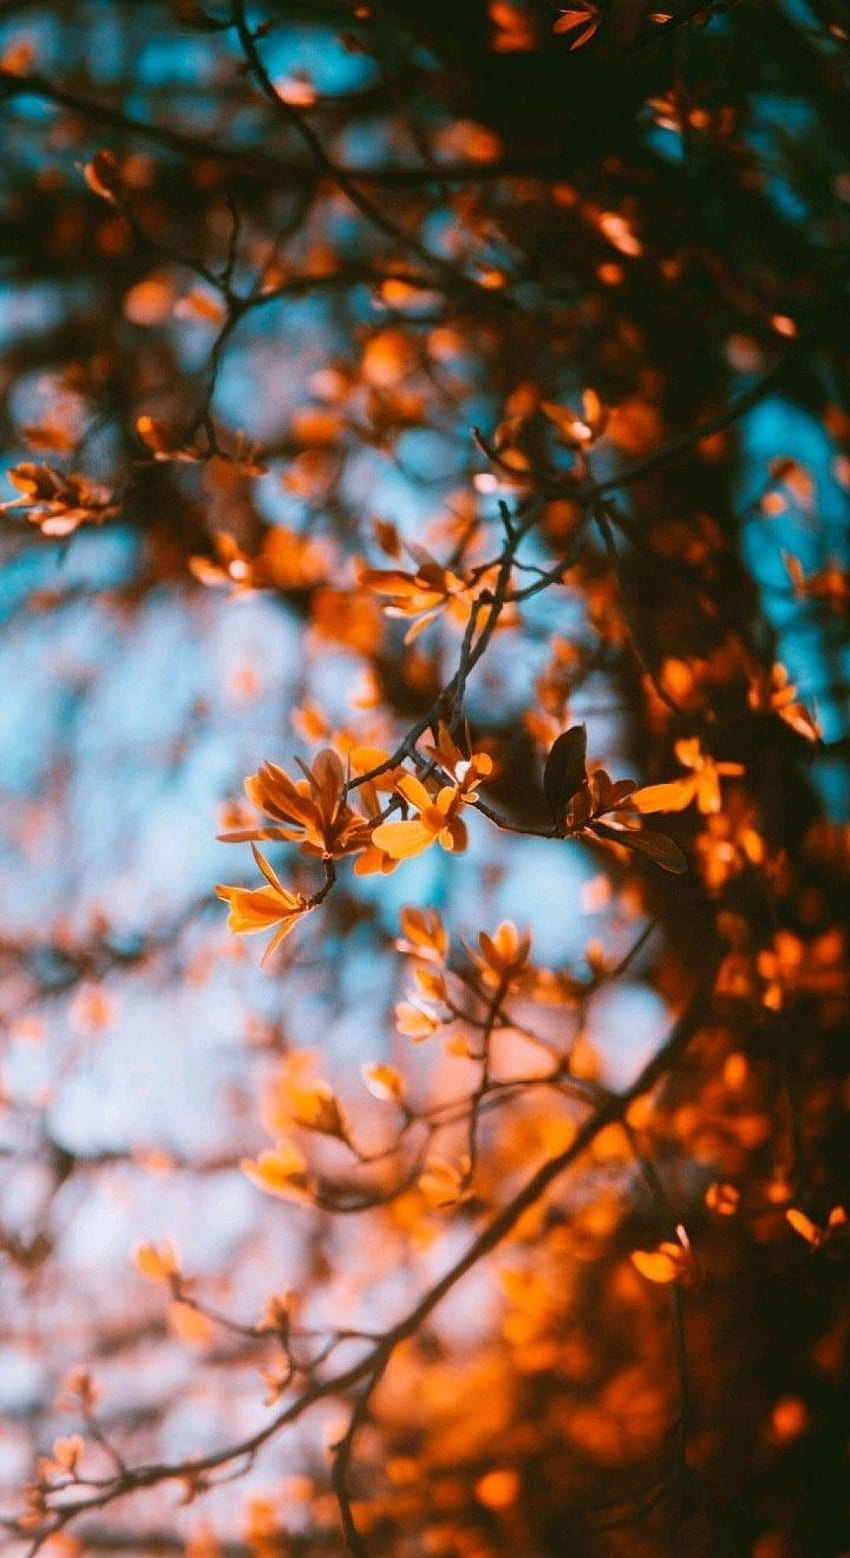 Mùa thu là mùa của những sự thay đổi, những cảm xúc mới lạ và những khoảnh khắc đáng nhớ. Autumn aesthetic là một chủ đề rất được yêu thích, nơi bạn có thể khám phá những bức ảnh đẹp nhất về mùa thu từ khắp nơi trên thế giới. Hãy để những hình ảnh này đưa bạn đến với những trải nghiệm tuyệt vời nhất của mùa thu.